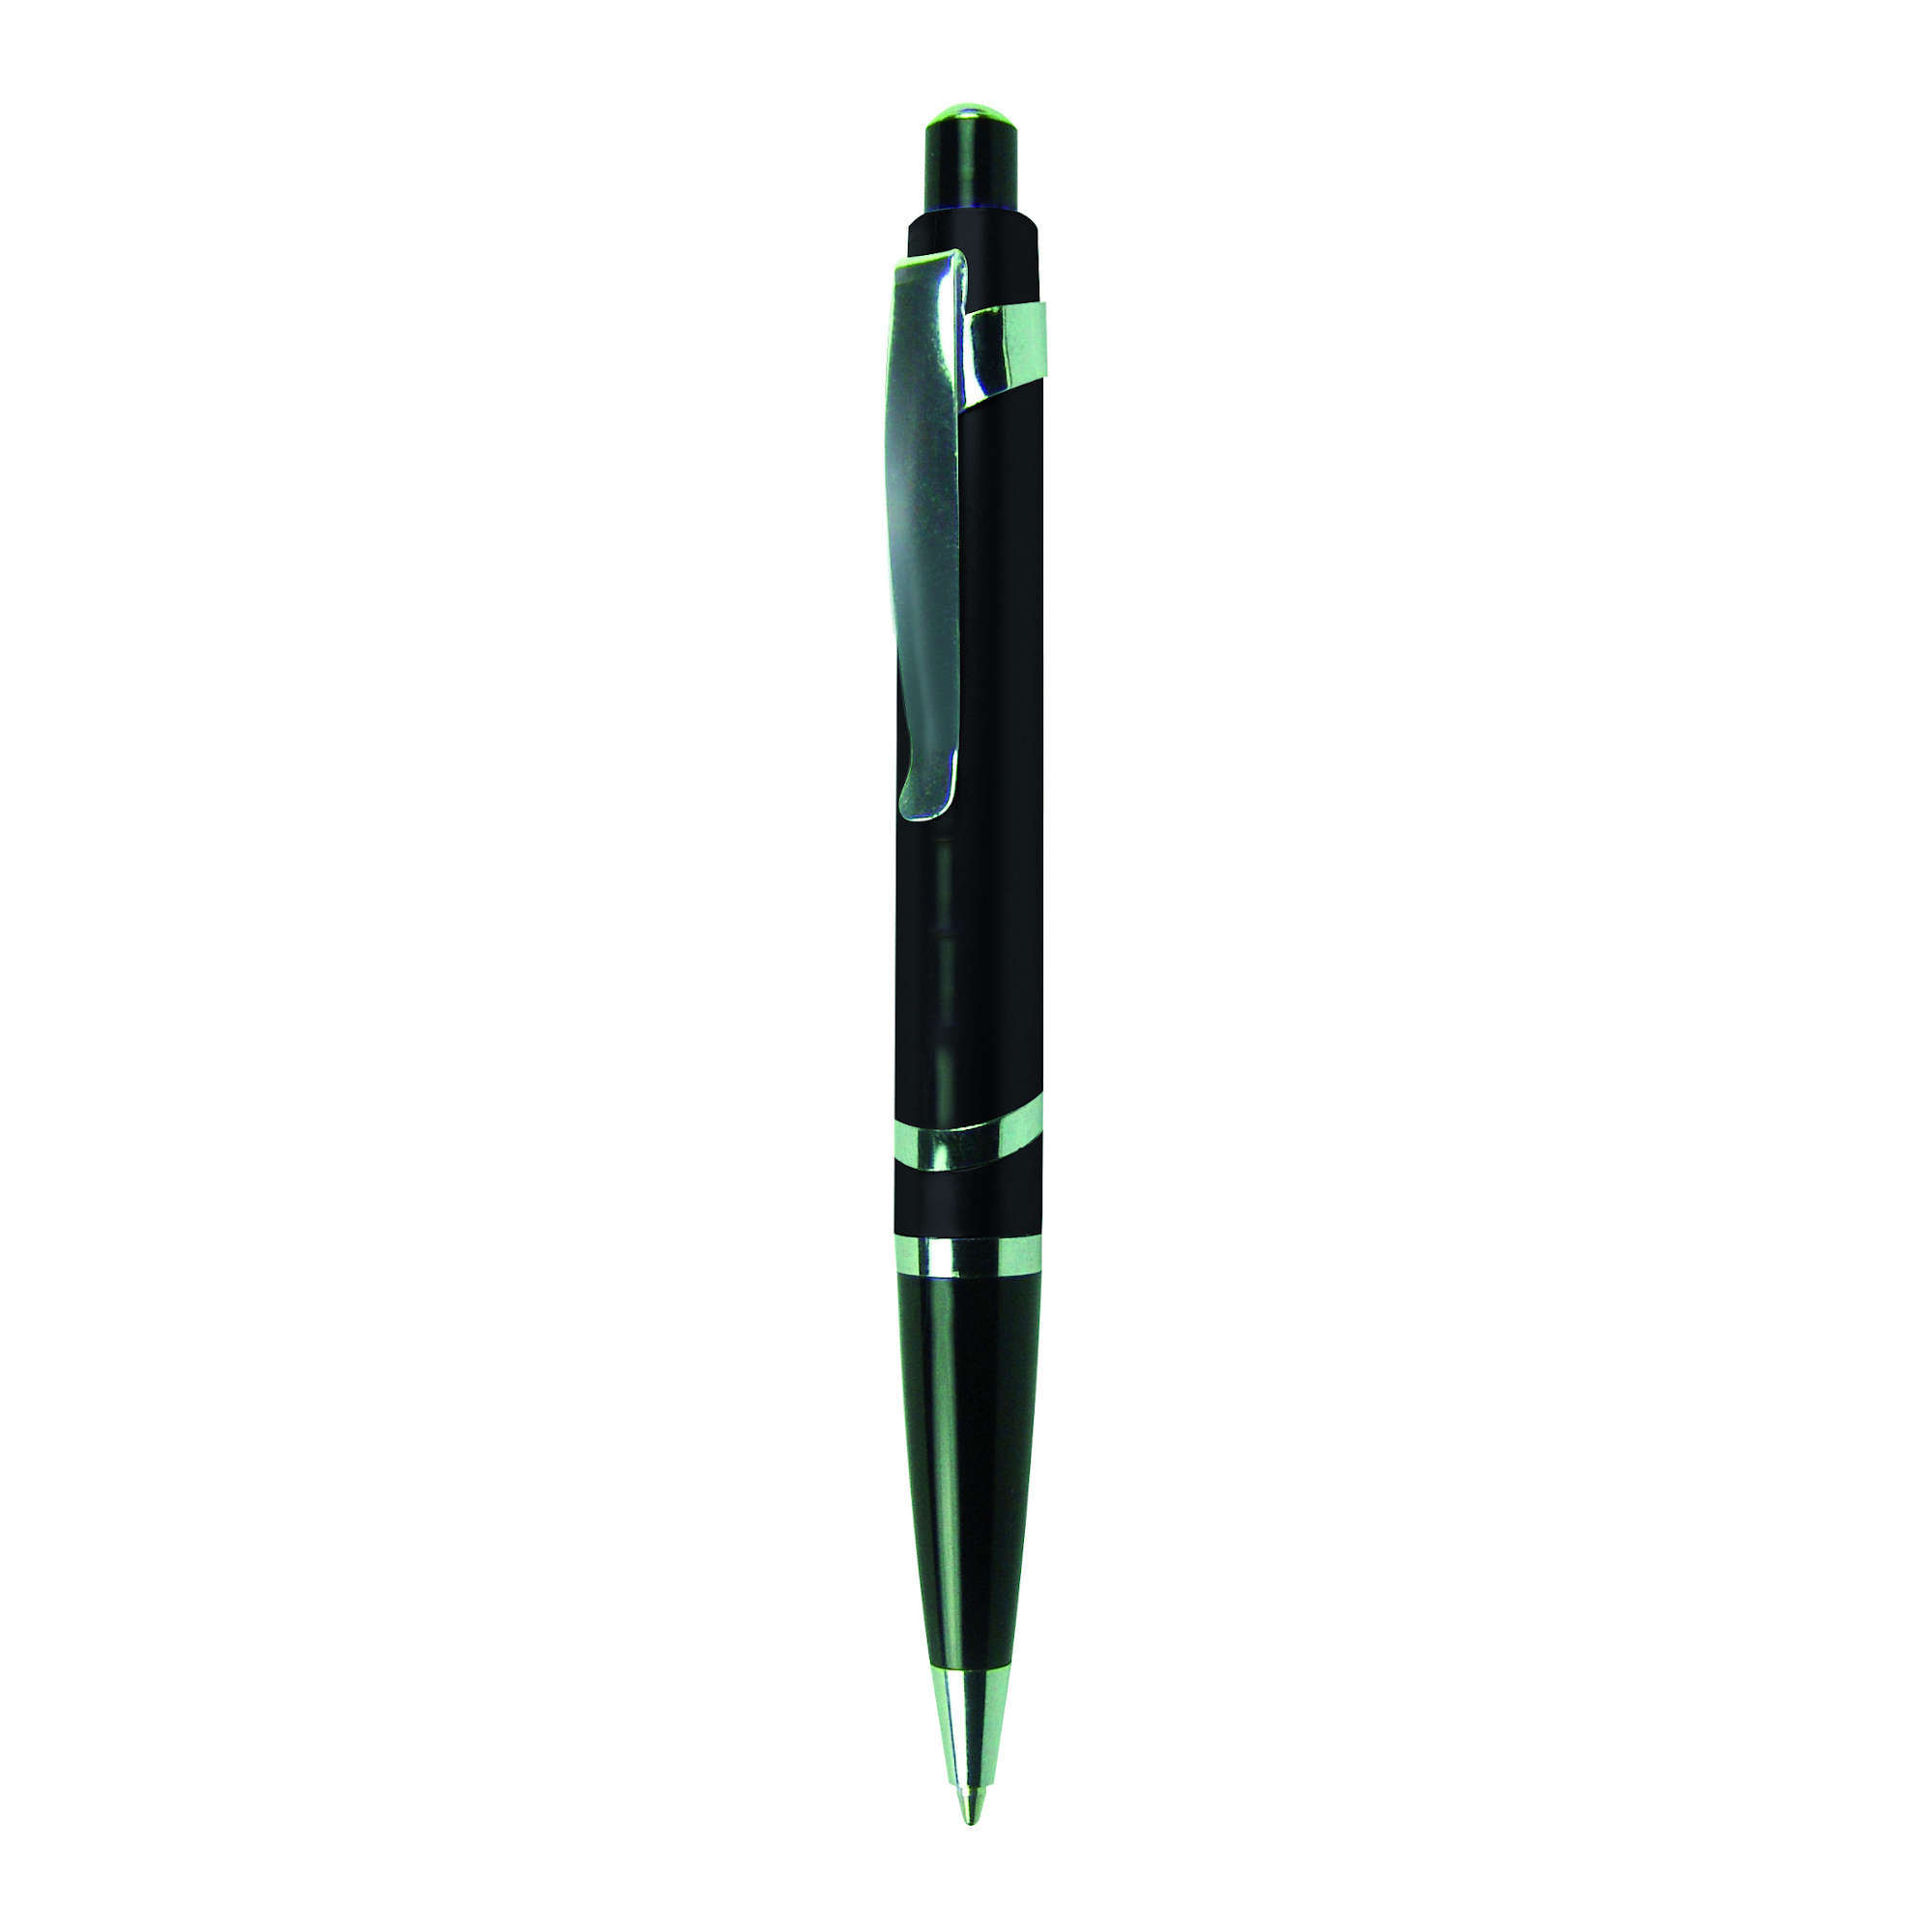 Bolígrafo Porto
Color negro